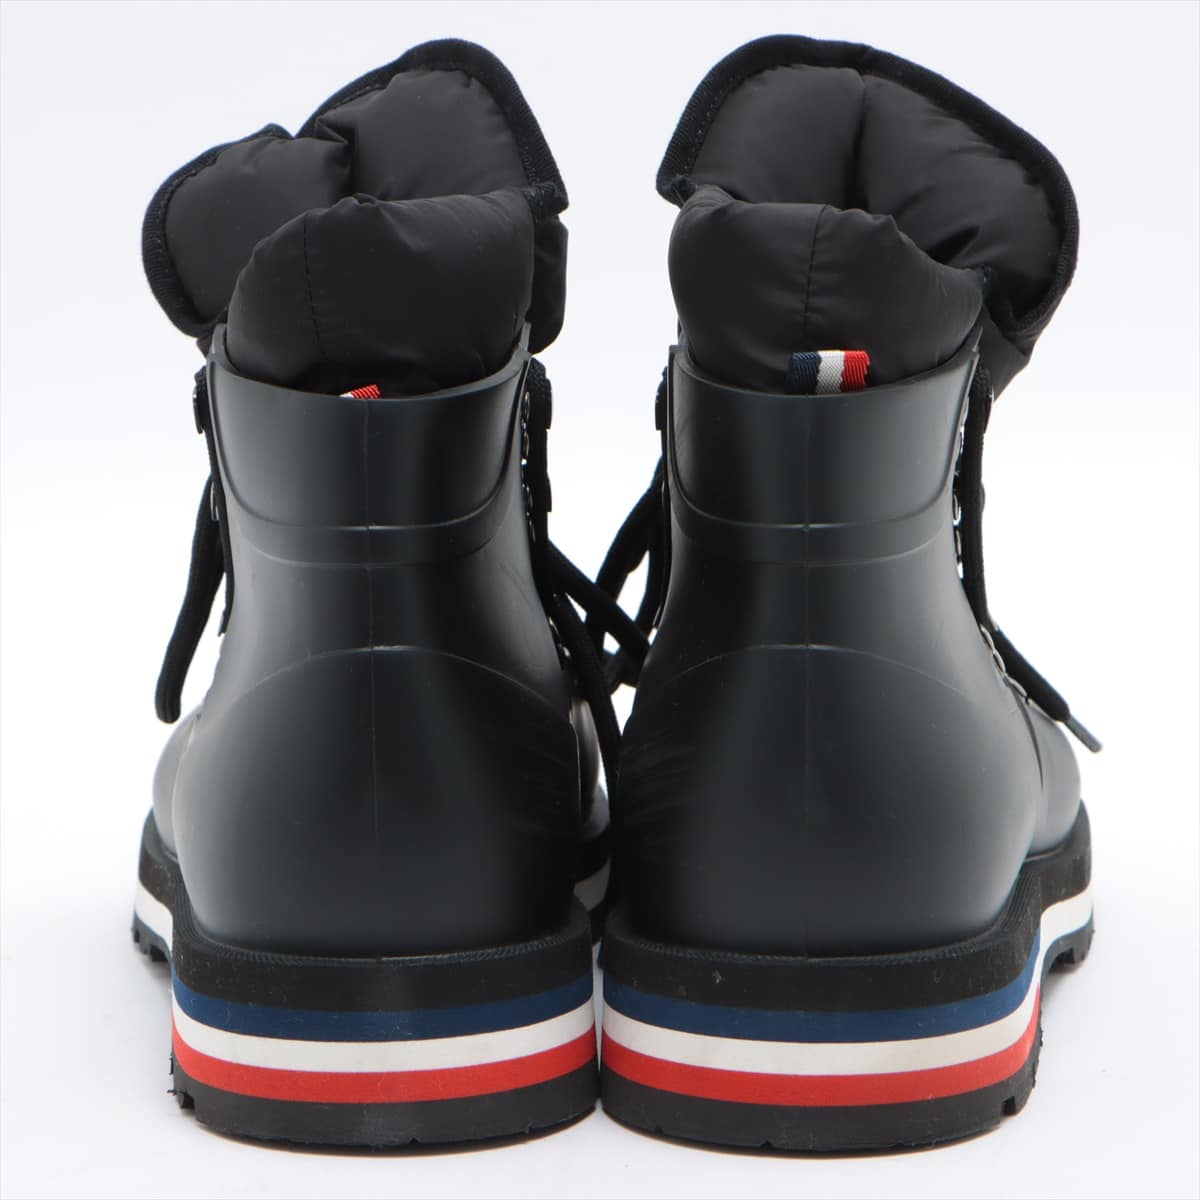 Moncler Rubber Rain boots 42 Men's Black HENOC SCARPA